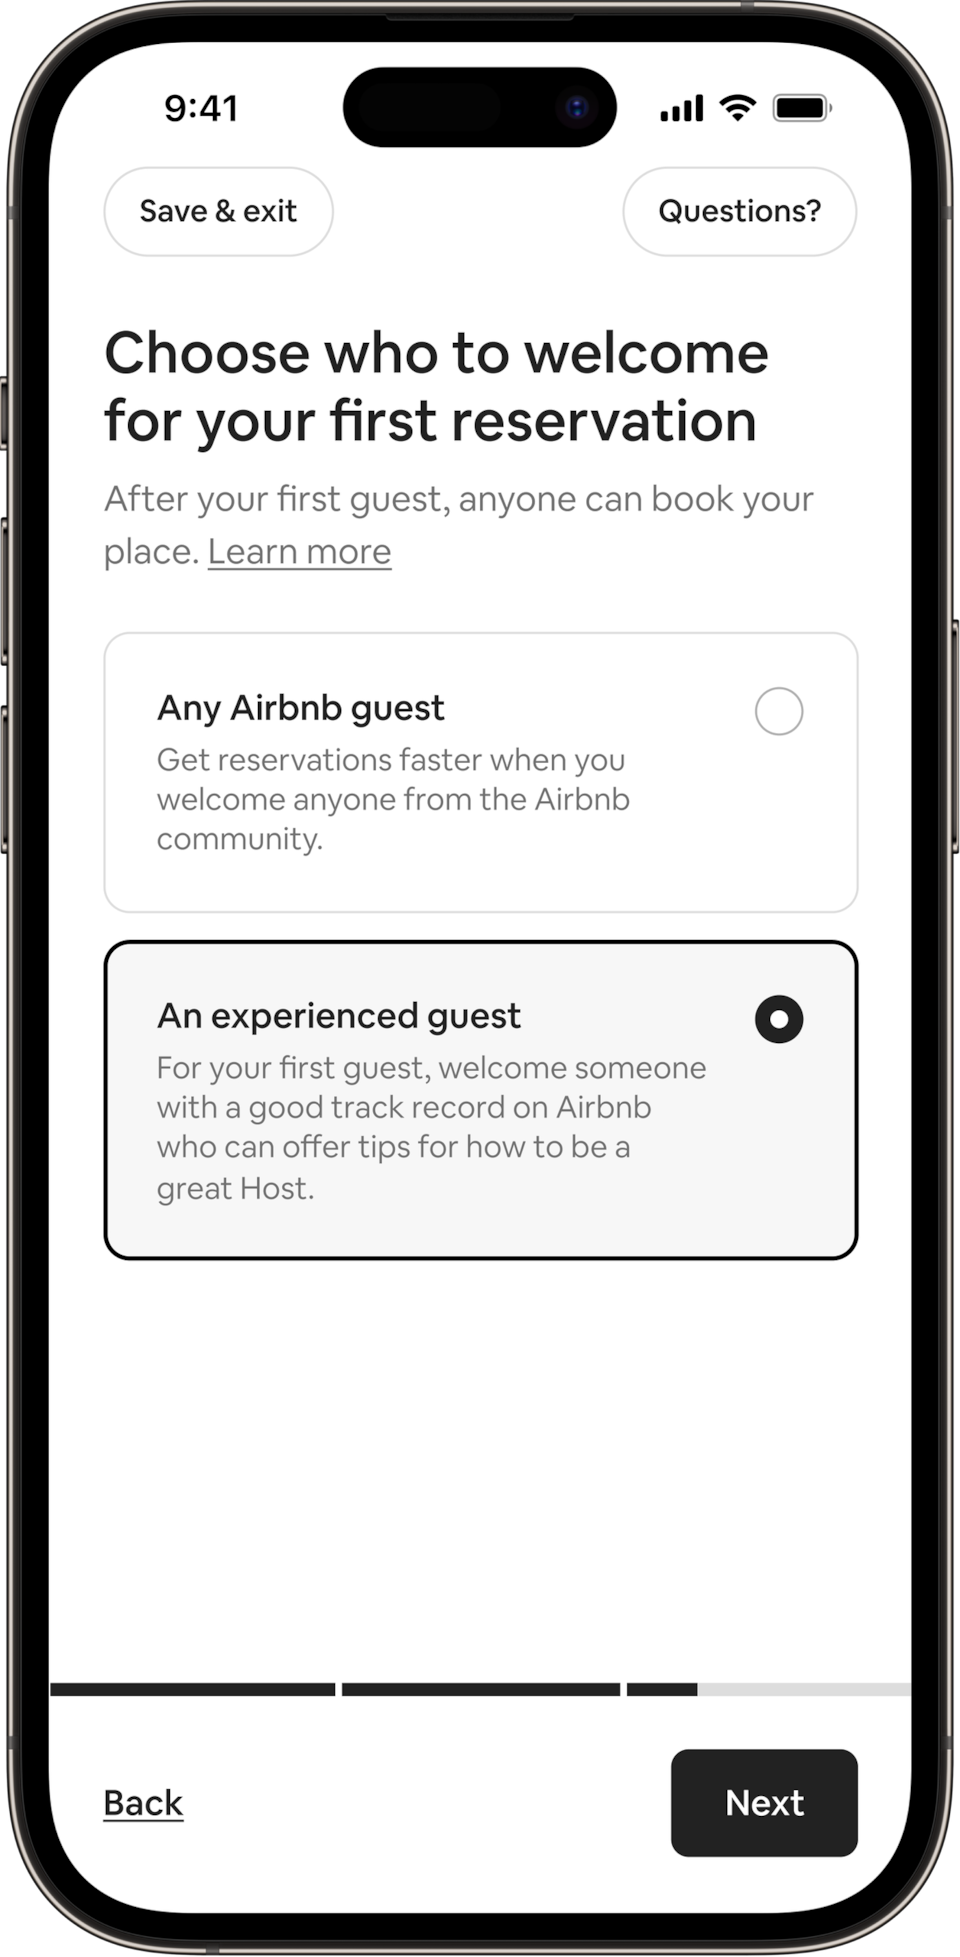 Σε ένα τηλέφωνο εμφανίζεται ένας τίτλος που αναφέρει: Επιλέξτε ποιον θα φιλοξενήσετε στην πρώτη σας κράτηση. Οι οικοδεσπότες μπορούν να επιλέξουν να υποδεχτούν είτε οποιονδήποτε επισκέπτη στην Airbnb είτε έναν έμπειρο επισκέπτη. Έχει επιλεγεί το κουμπί για τον έμπειρο επισκέπτη.